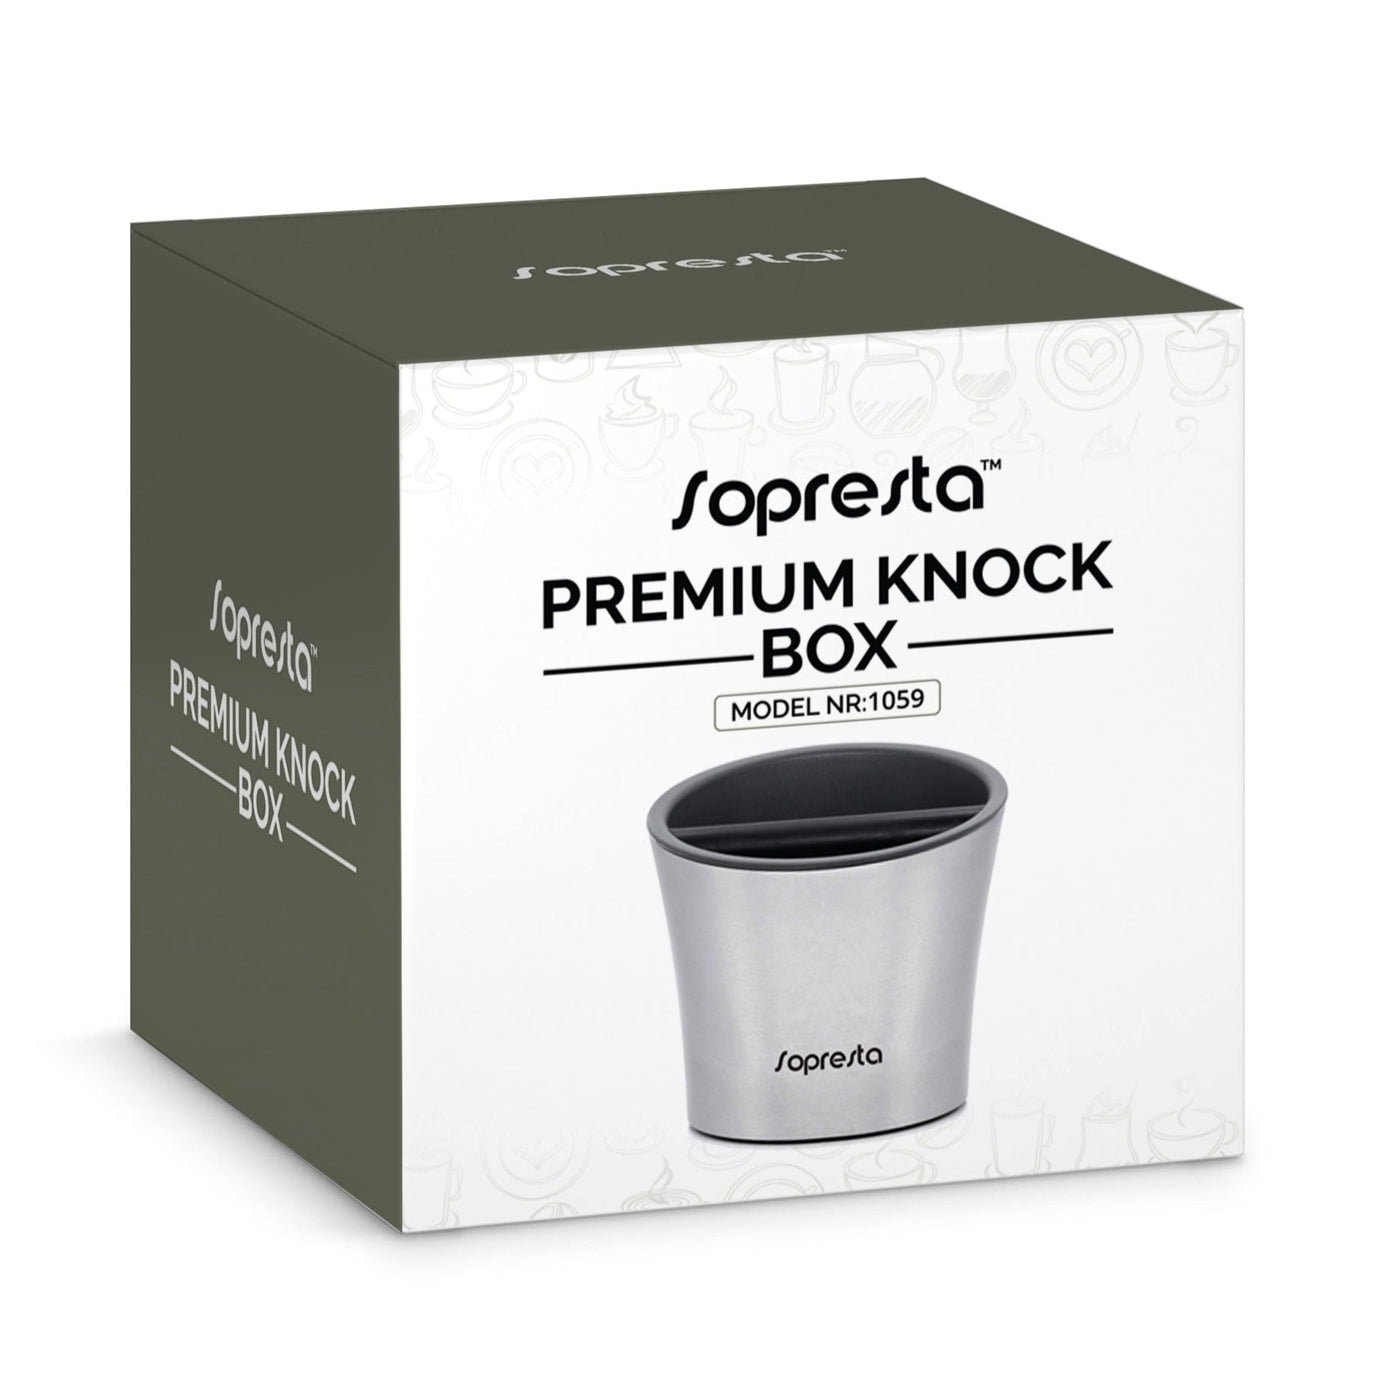 Sopresta Premium Knock Box i Stål Model:1059 - Boxe